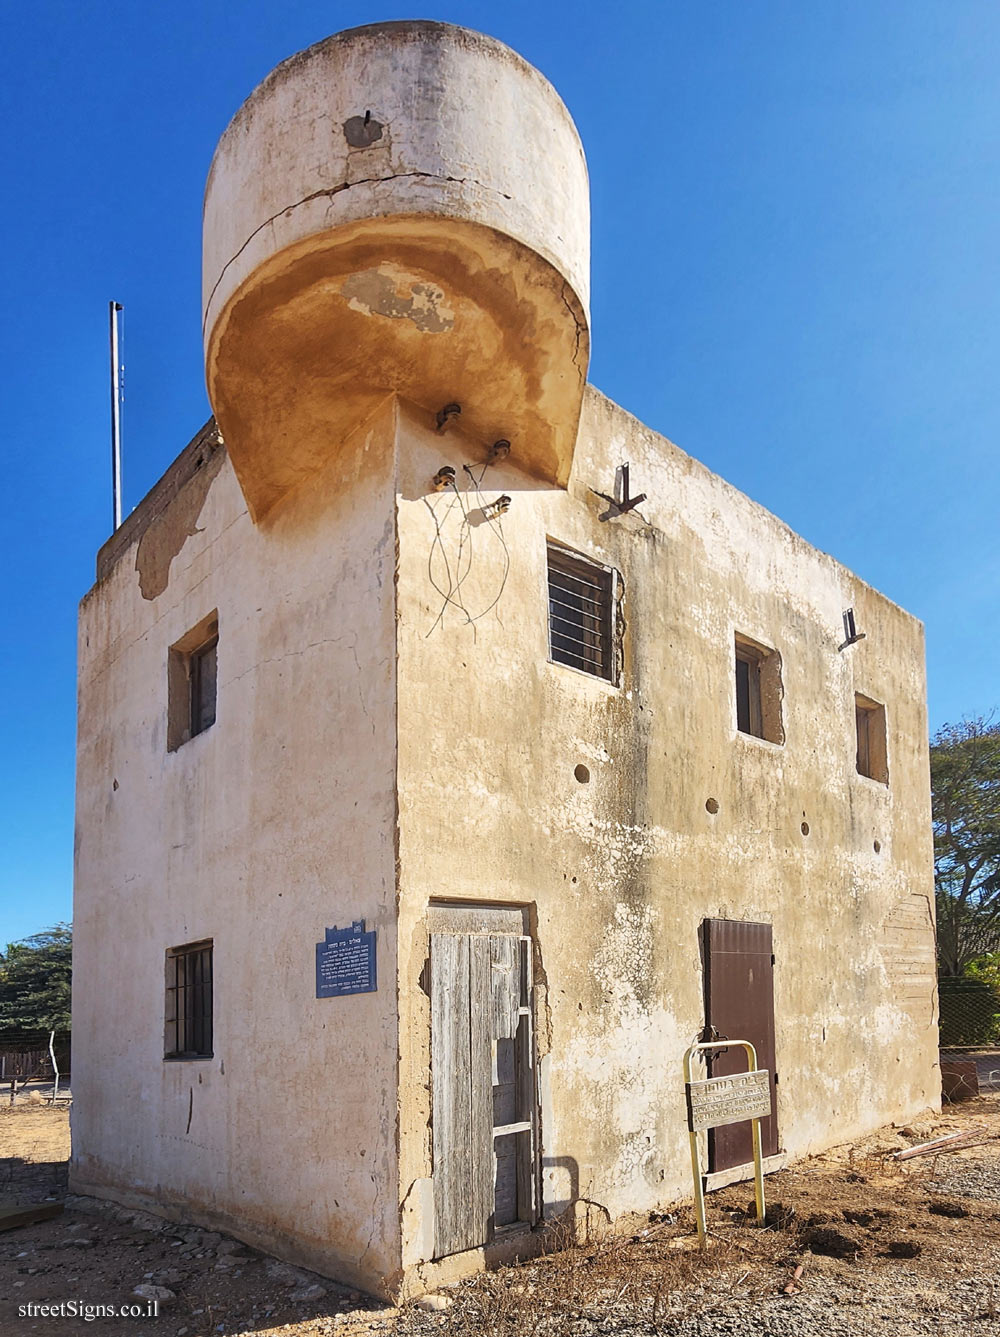 Tze’elim - Heritage Sites in Israel - Security house - Junction, Tse’elim, Israel